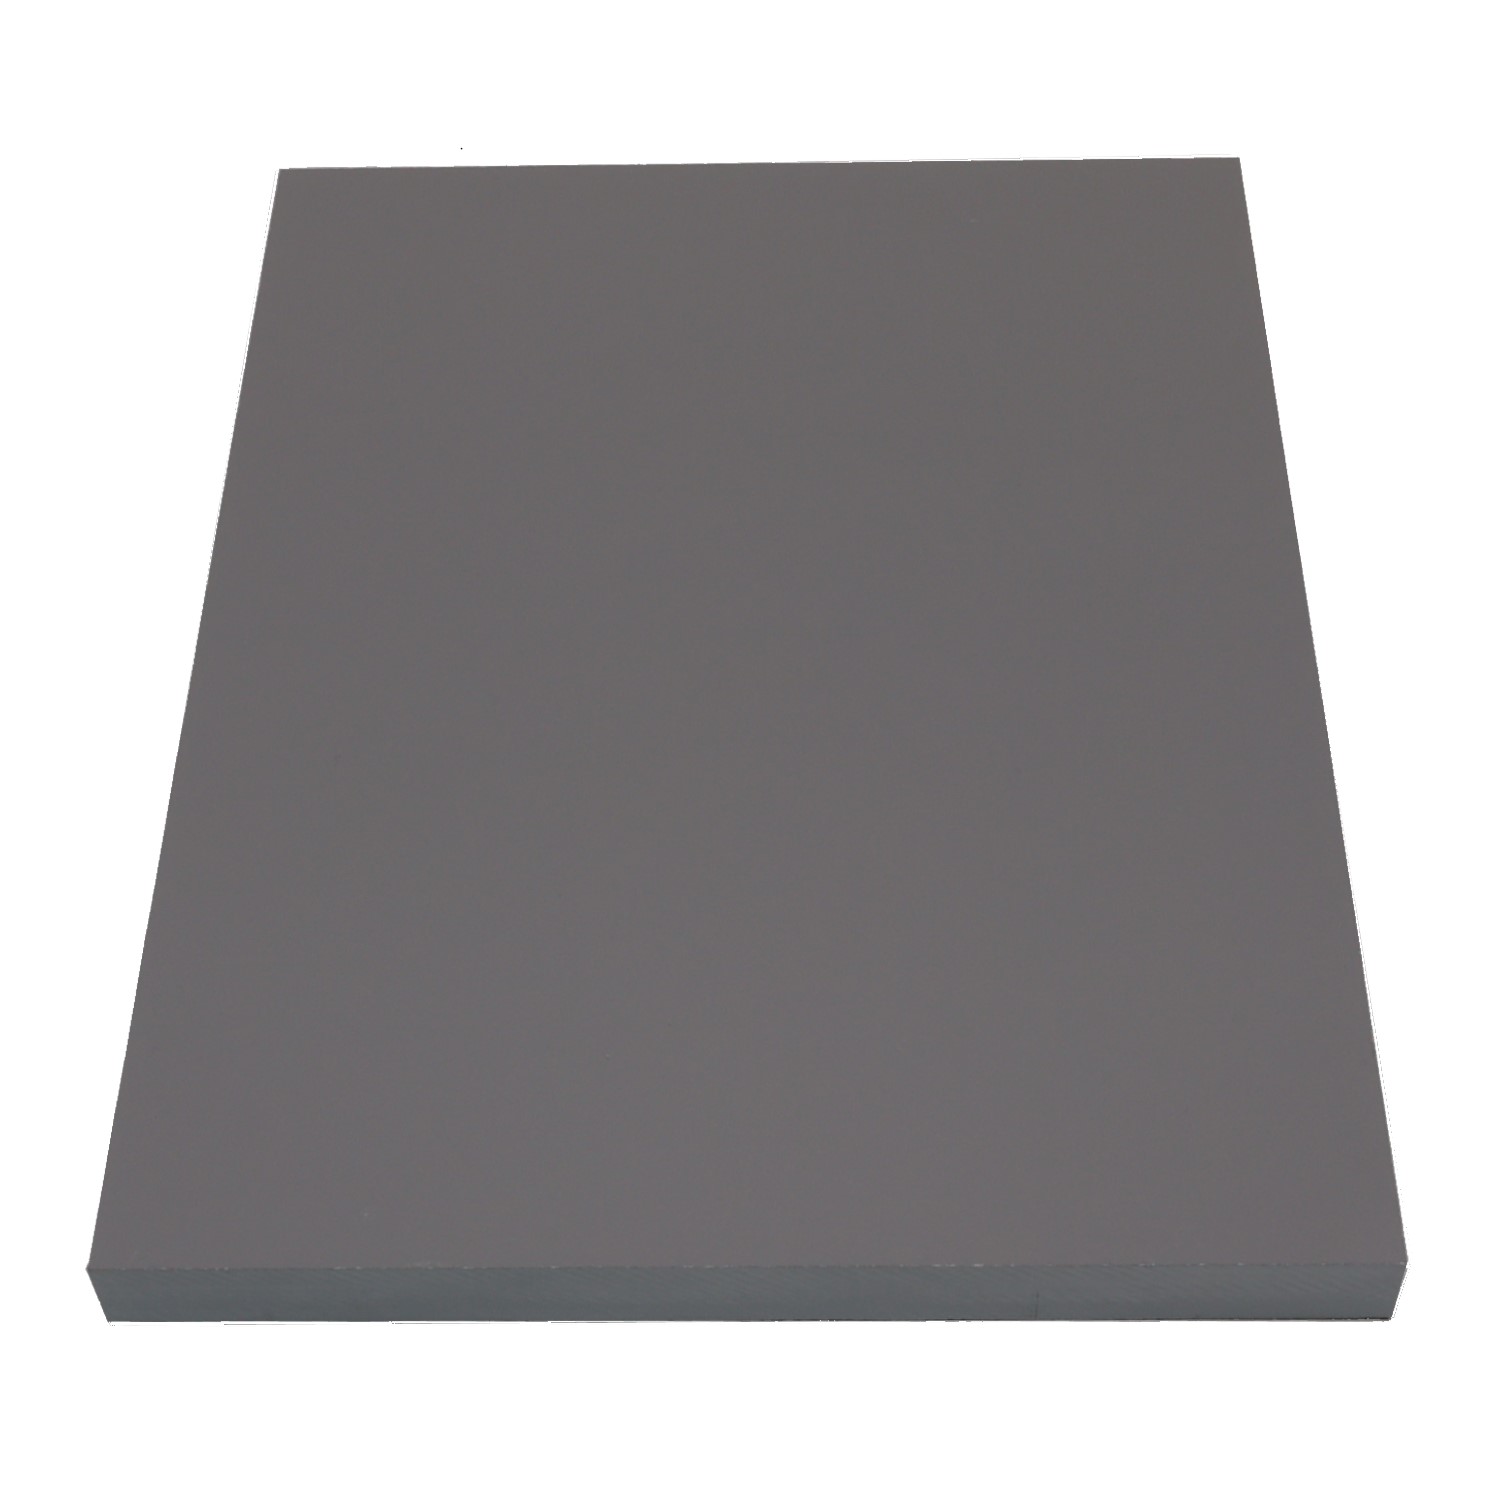 Échantillon compact Carbon gris platine 8109 6" x 8"